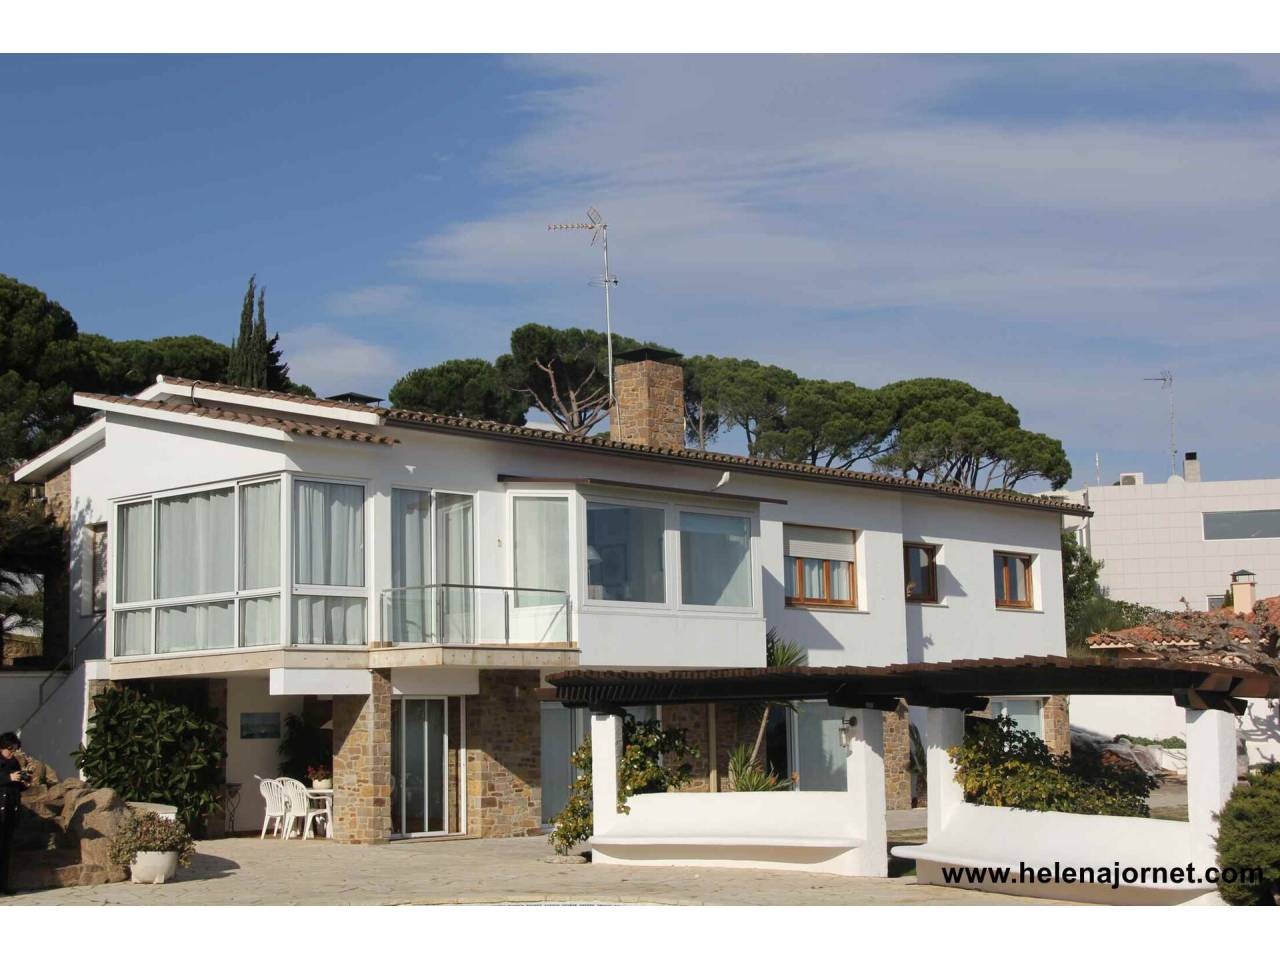 Sensationnelle maison avec vues spectaculaires sur la baie de Sant Pol - 2809